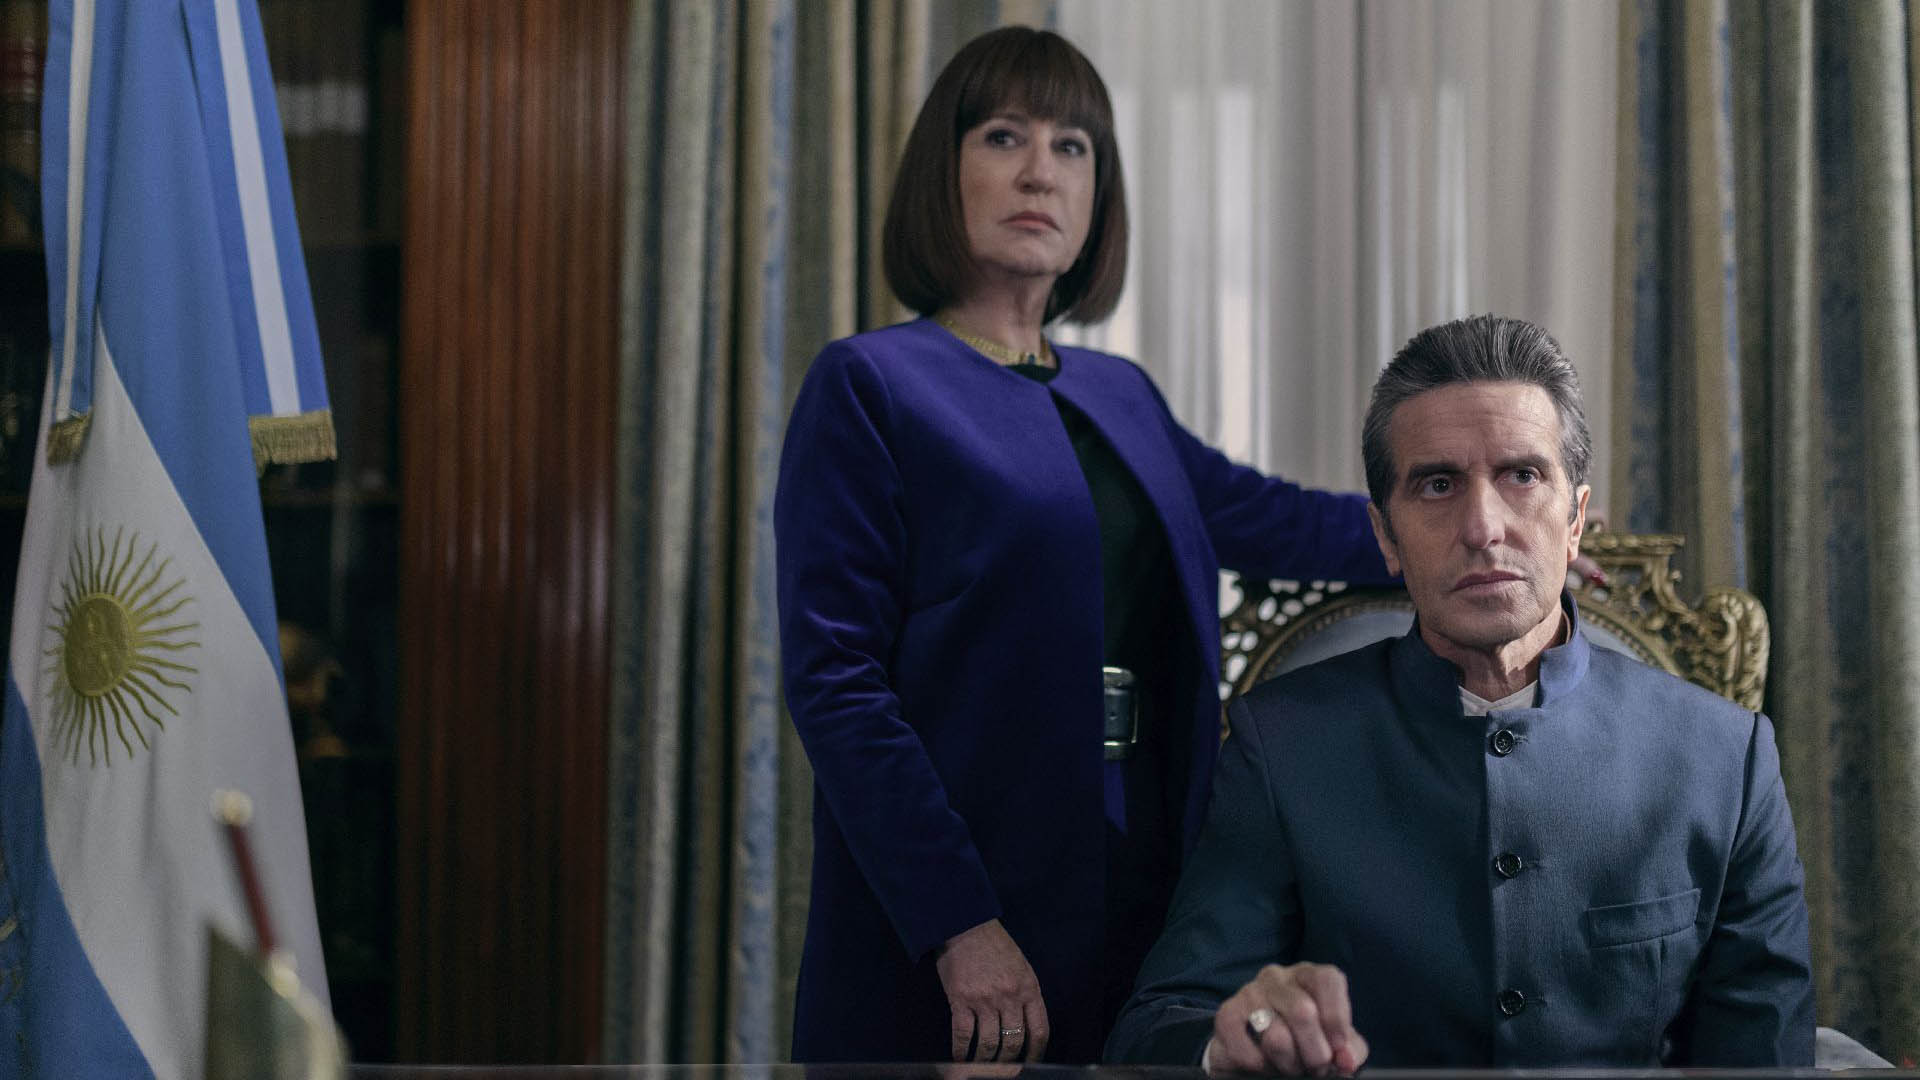 "El Reino": Mercedes Moran y Diego Peretti en la segunda temporada
Cr. Marcos Ludevid / Netflix © 2023